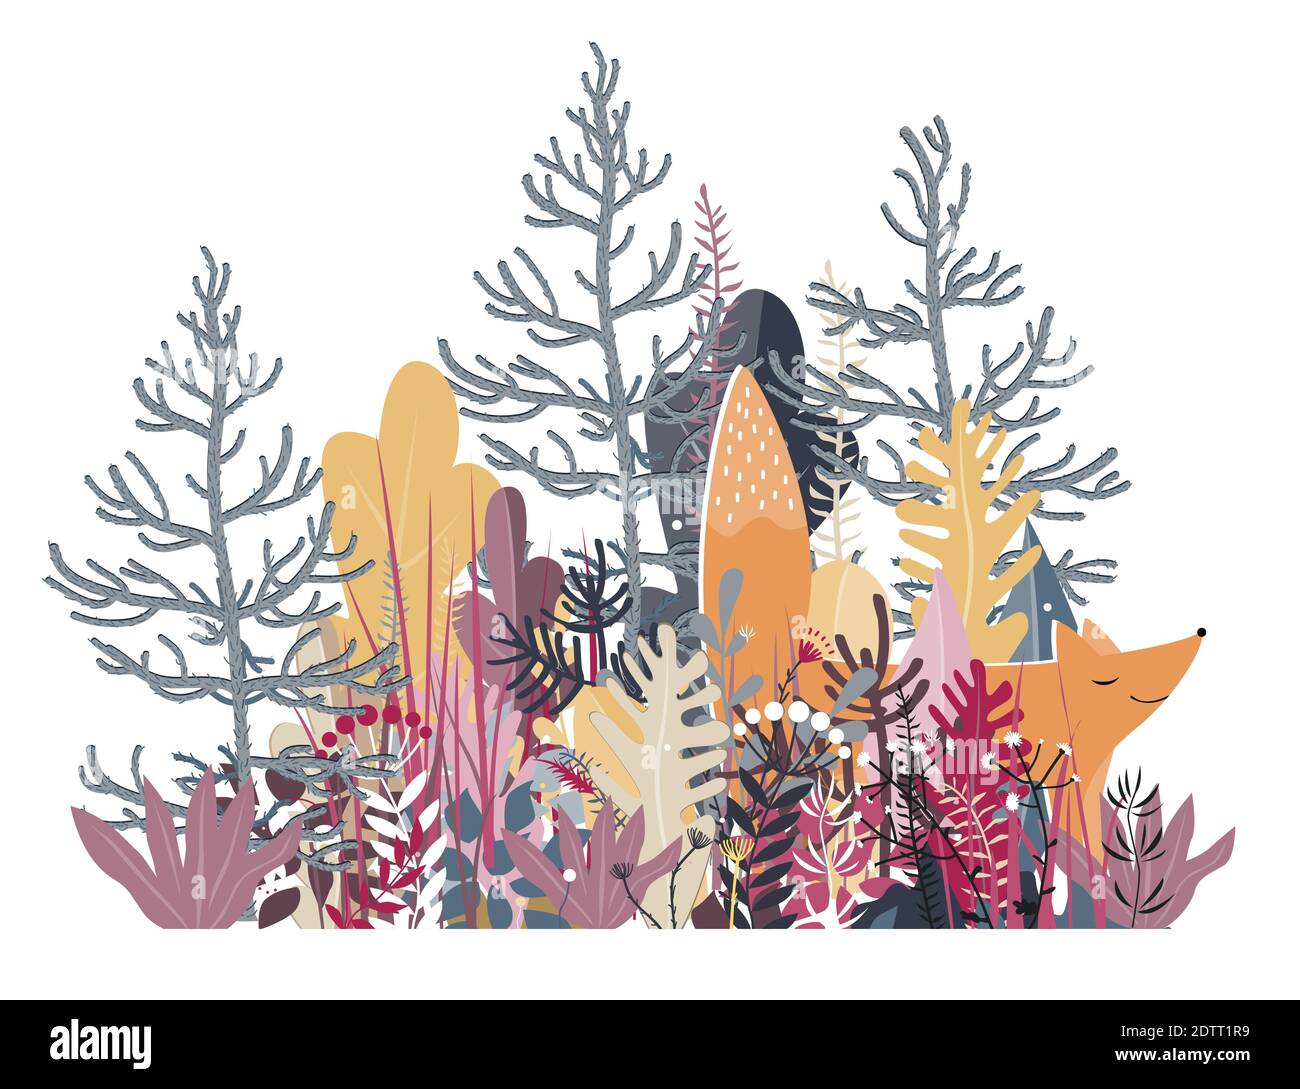 Carino volpe rossa sorridente che cammina nei boschi, illustrazione vettoriale. Illustrazione per bambini, disegno di animali selvatici, sfondo autunnale disegnato a mano con colori vivaci Illustrazione Vettoriale